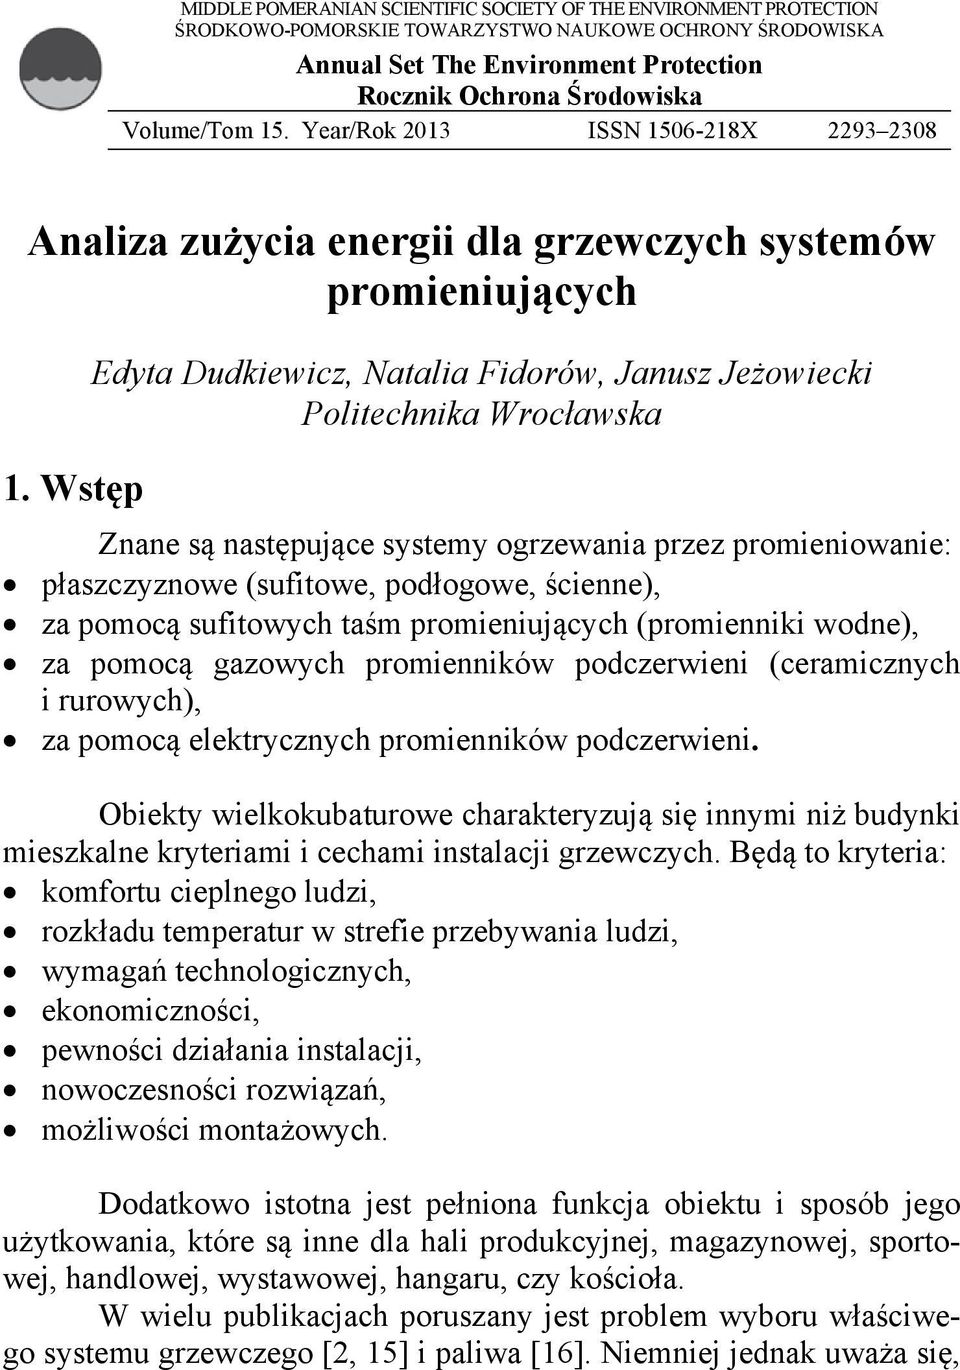 Wstęp Edyta Dudkiewicz, Natalia Fidorów, Janusz Jeżowiecki Politechnika Wrocławska Znane są następujące systemy ogrzewania przez promieniowanie: płaszczyznowe (sufitowe, podłogowe, ścienne), za